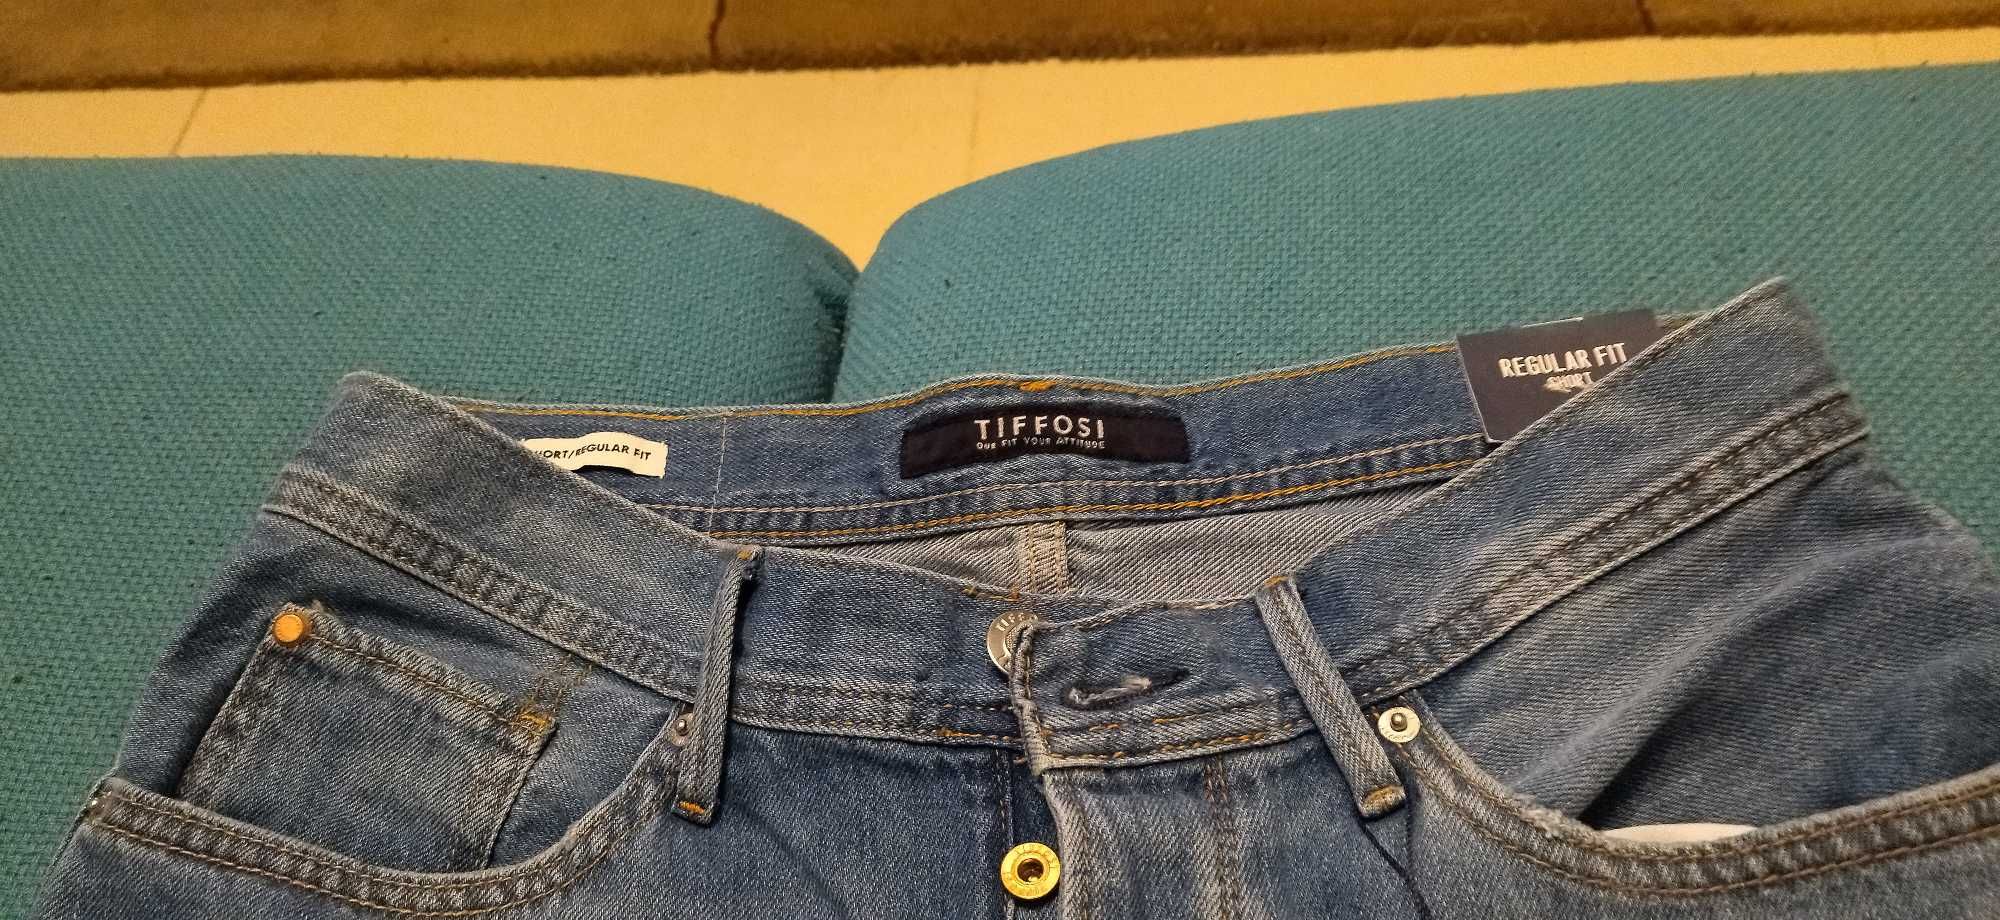 Calção Jeans Tiffosi - S - Novo preço